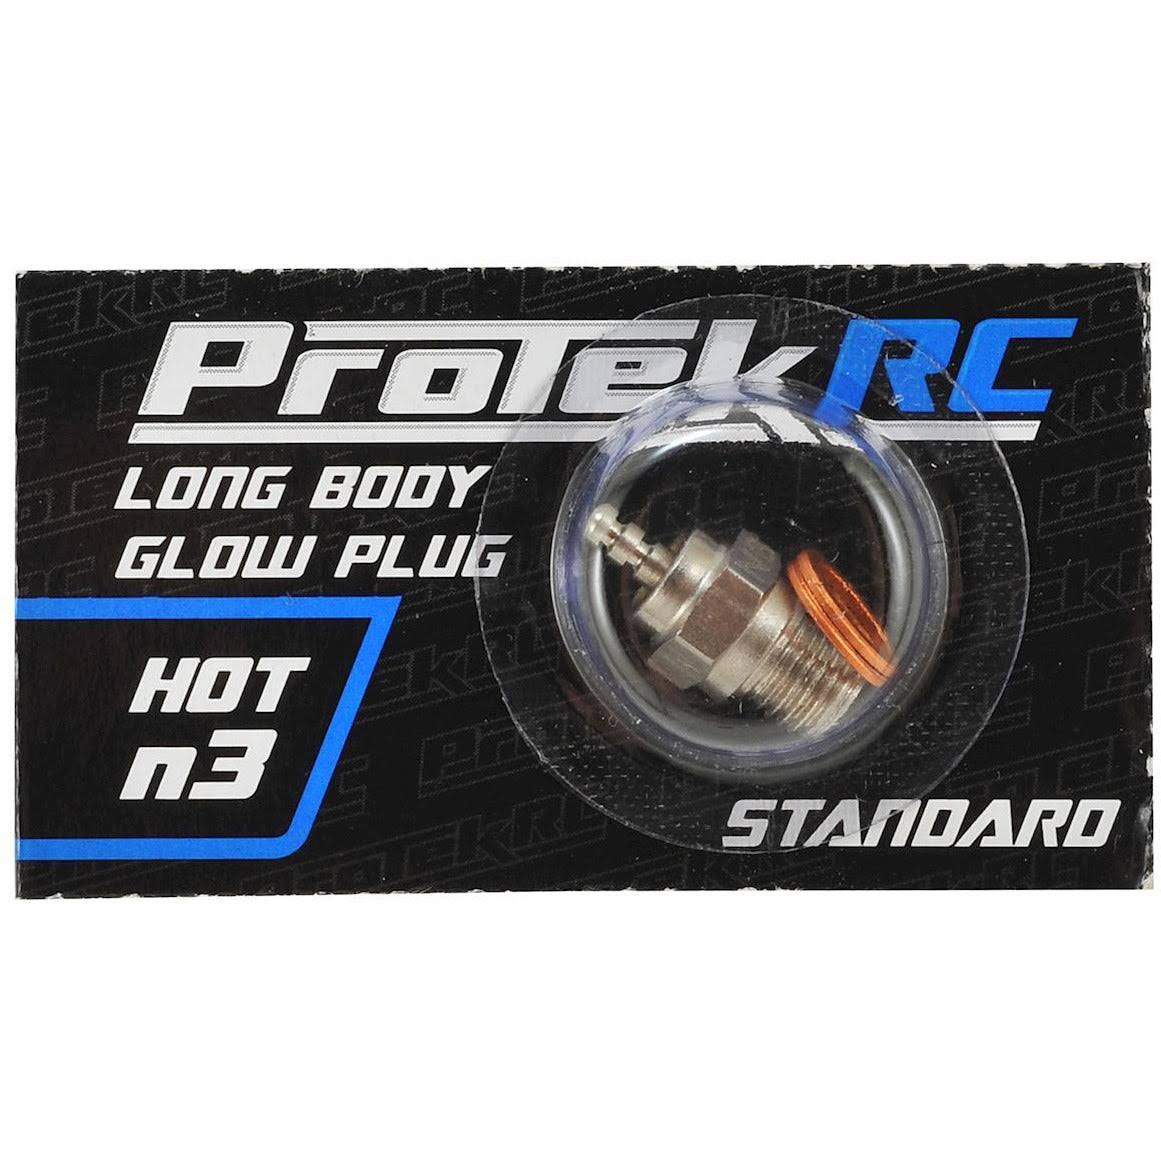 Protek RC N3 Hot Standard Glow Plug (.12 and .18 Engines)